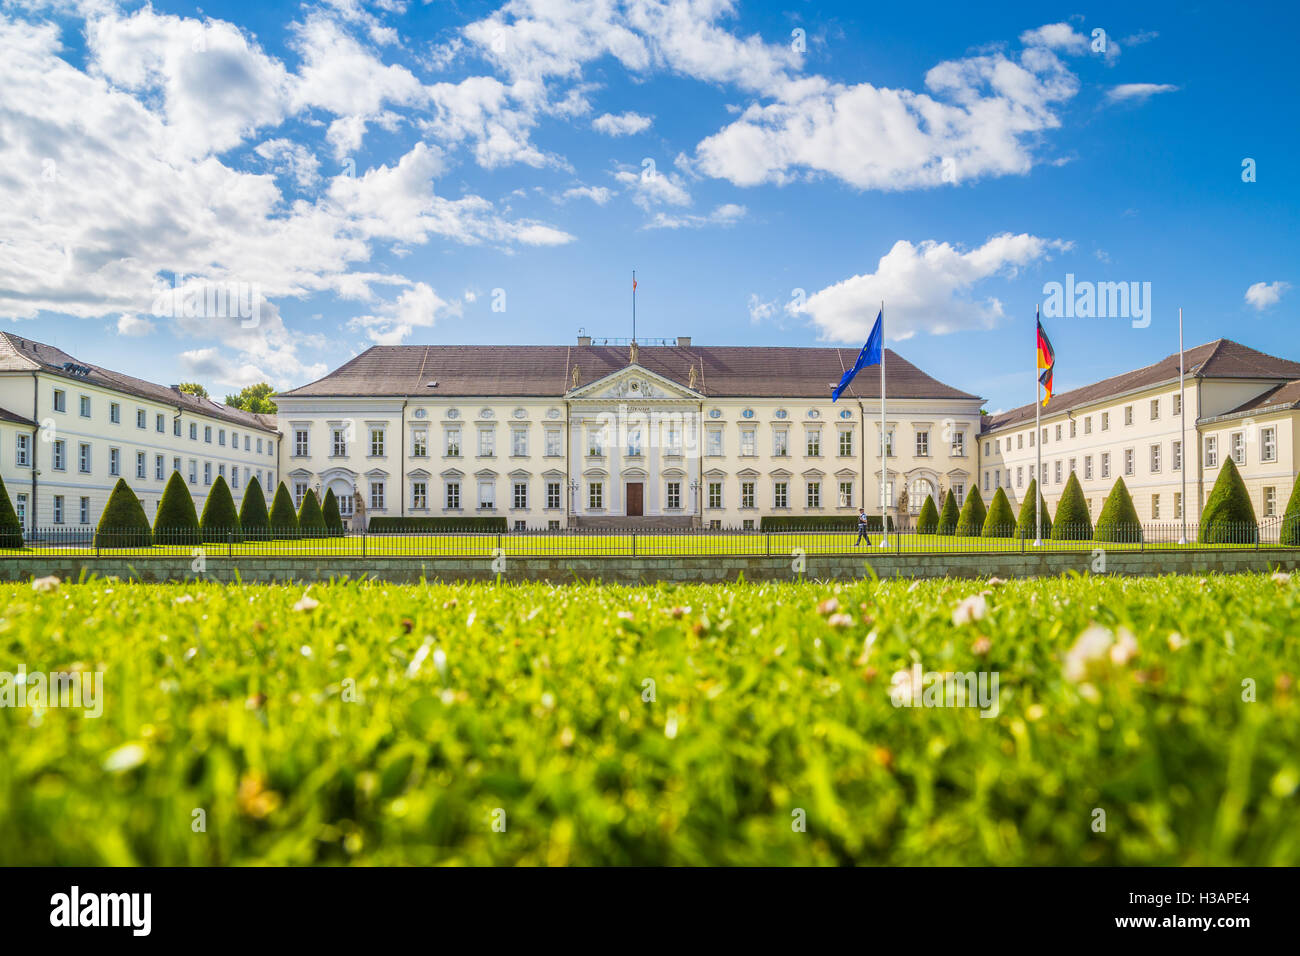 Vista clásica del famoso Schloss Bellevue, residencia oficial del Presidente de la República de Alemania, en Berlín, Alemania Foto de stock